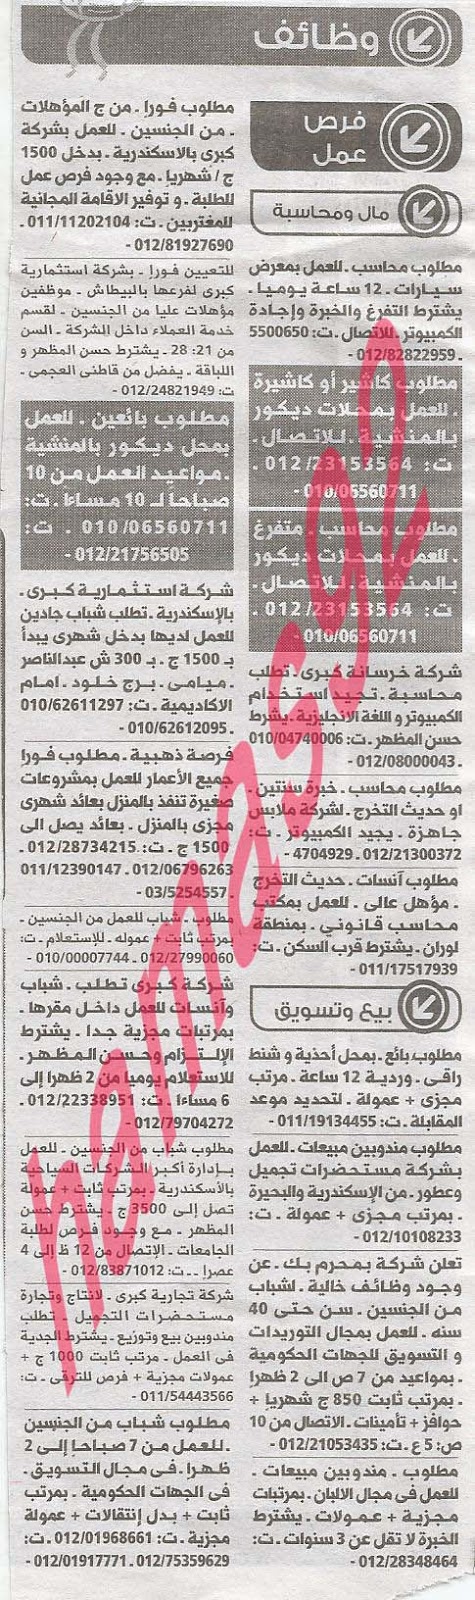 وظائف خالية من جريدة الوسيط الاسكندرية الثلاثاء 03-09-2013 %D9%88+%D8%B3+%D8%B3+1